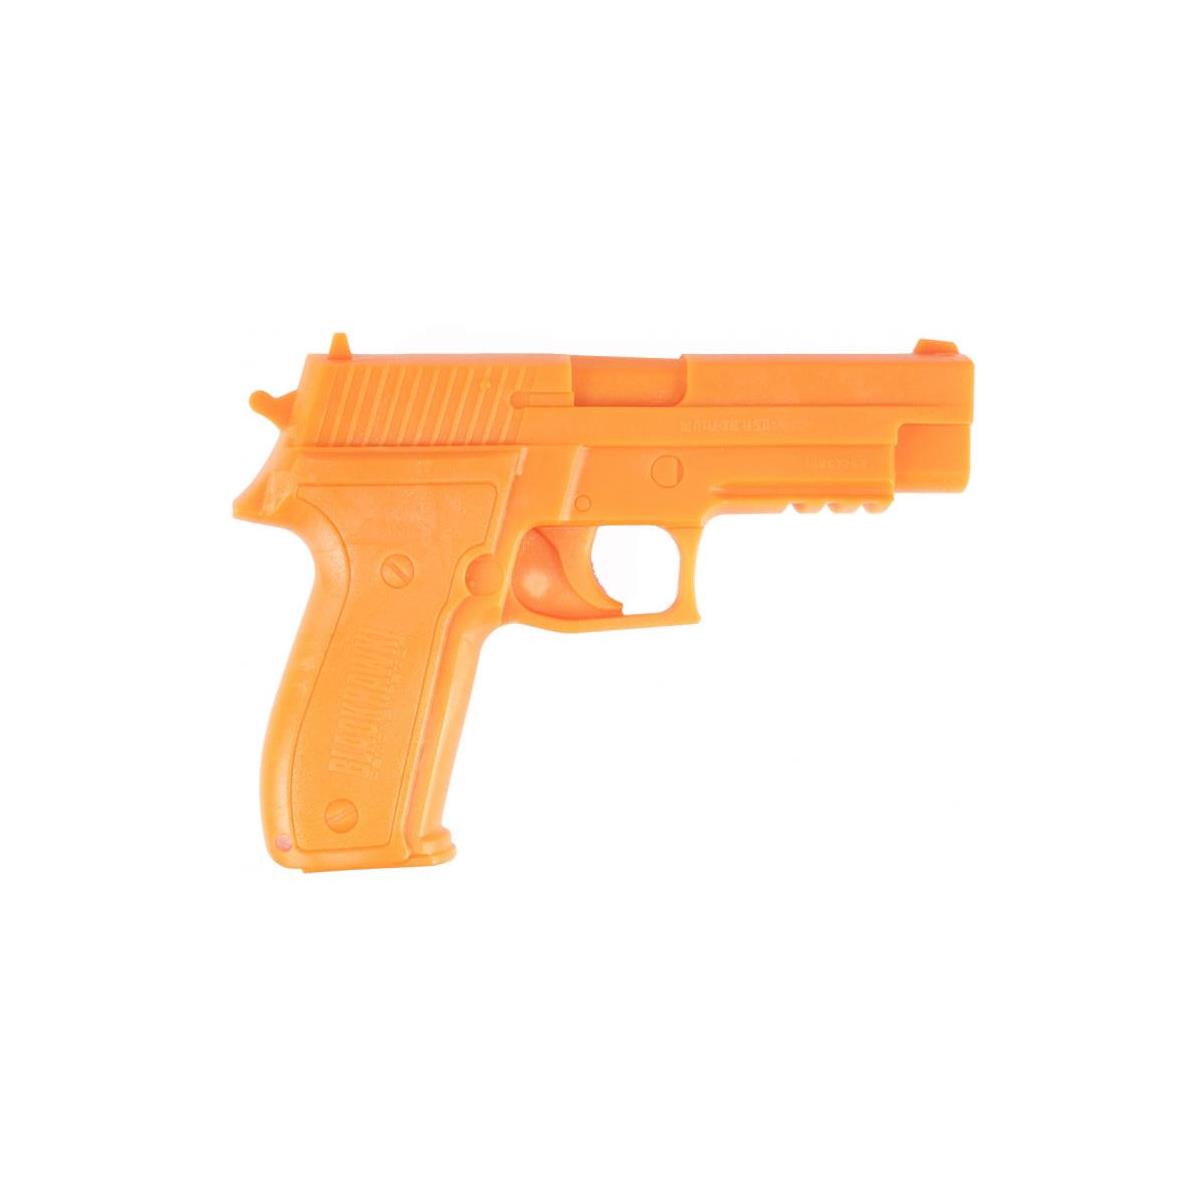 Image of Blackhawk Glock 17 Demonstrator Replica Gun